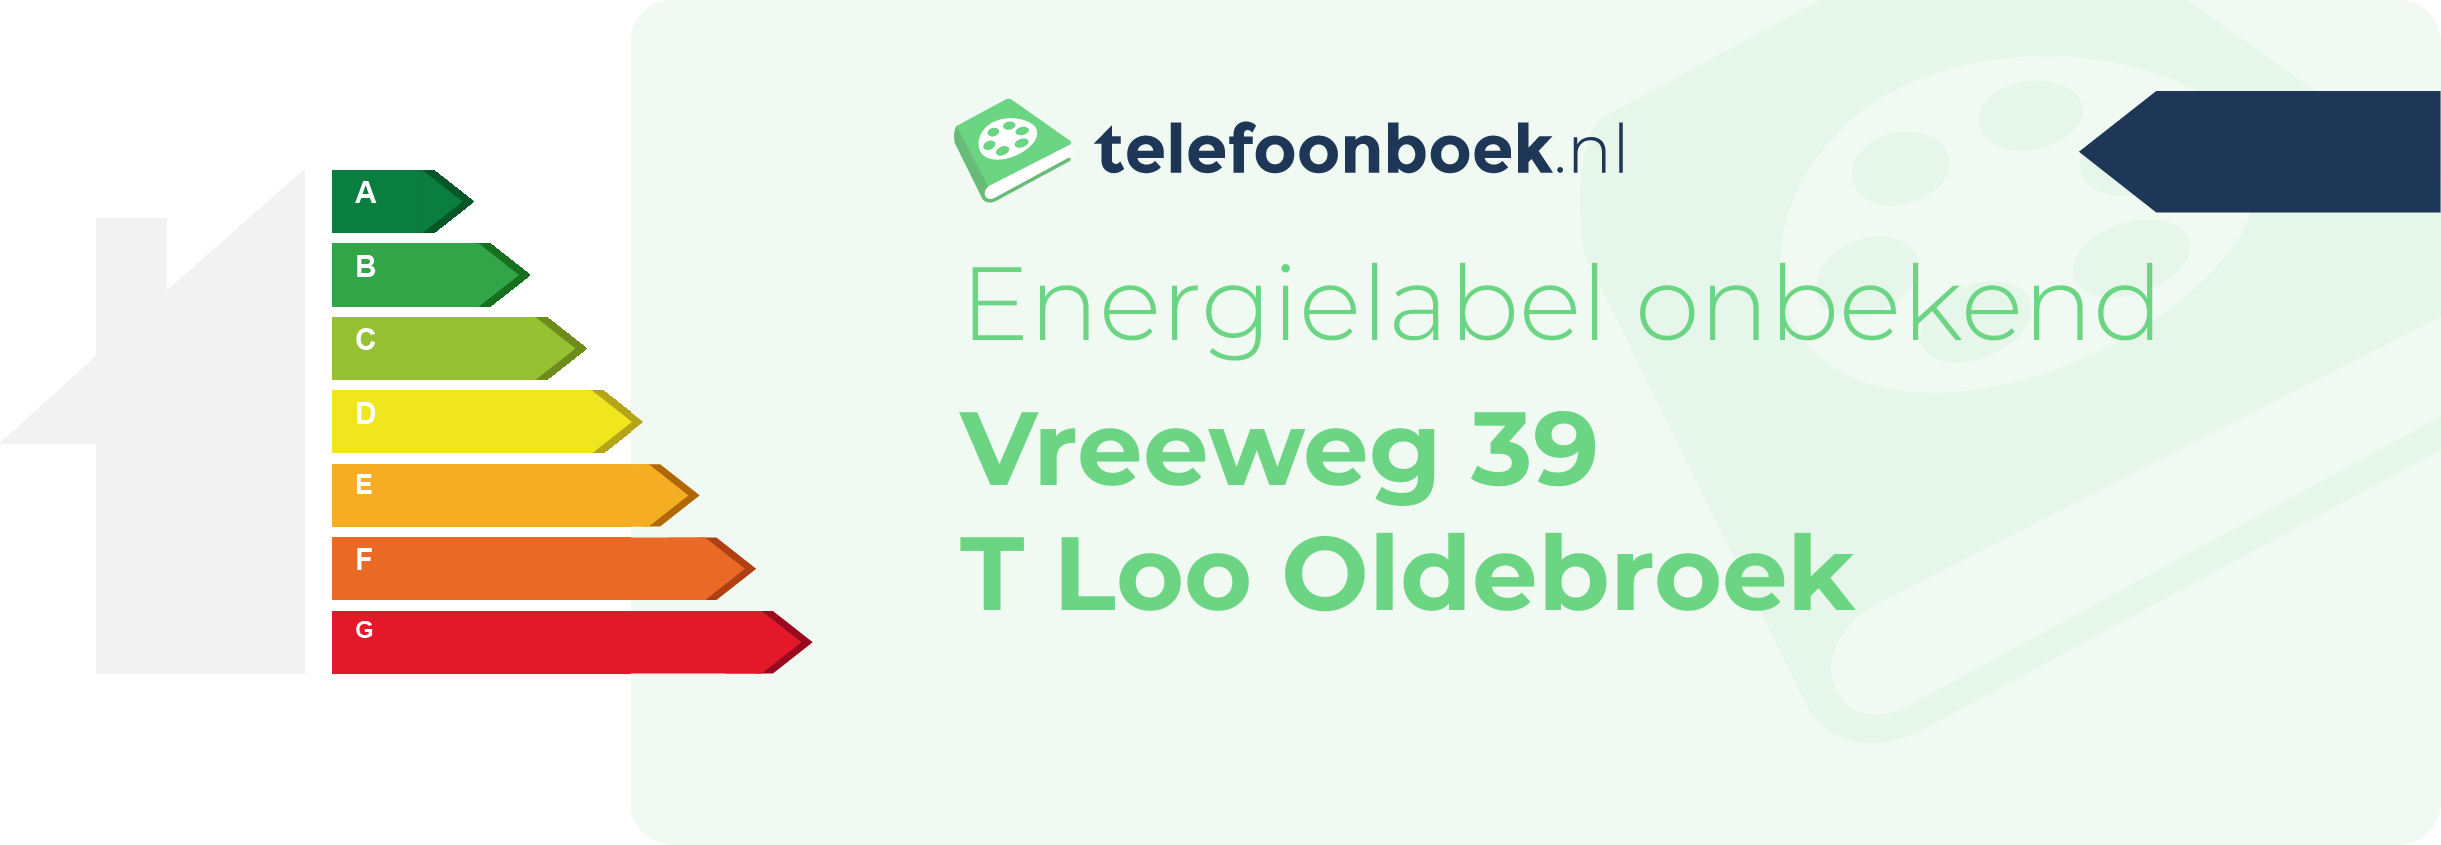 Energielabel Vreeweg 39 T Loo Oldebroek